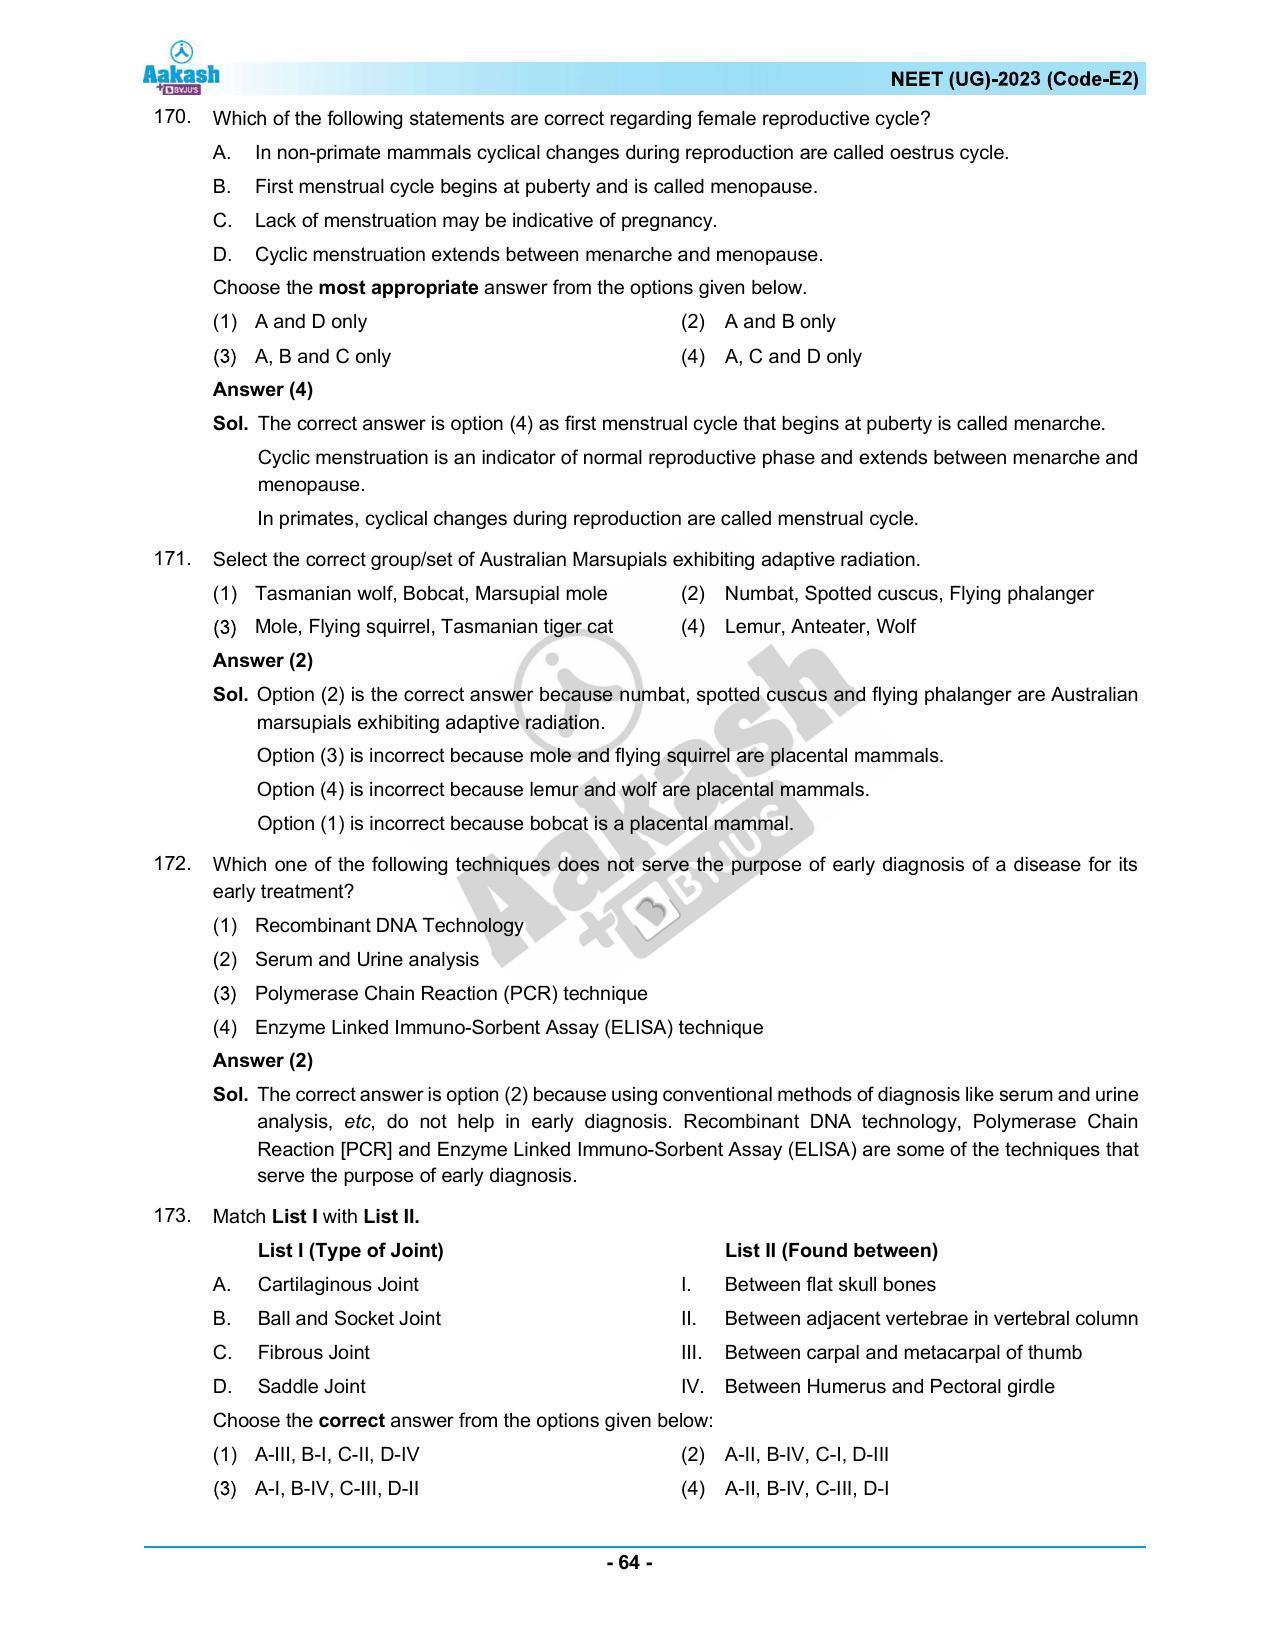 NEET 2023 Question Paper E2 - Page 64